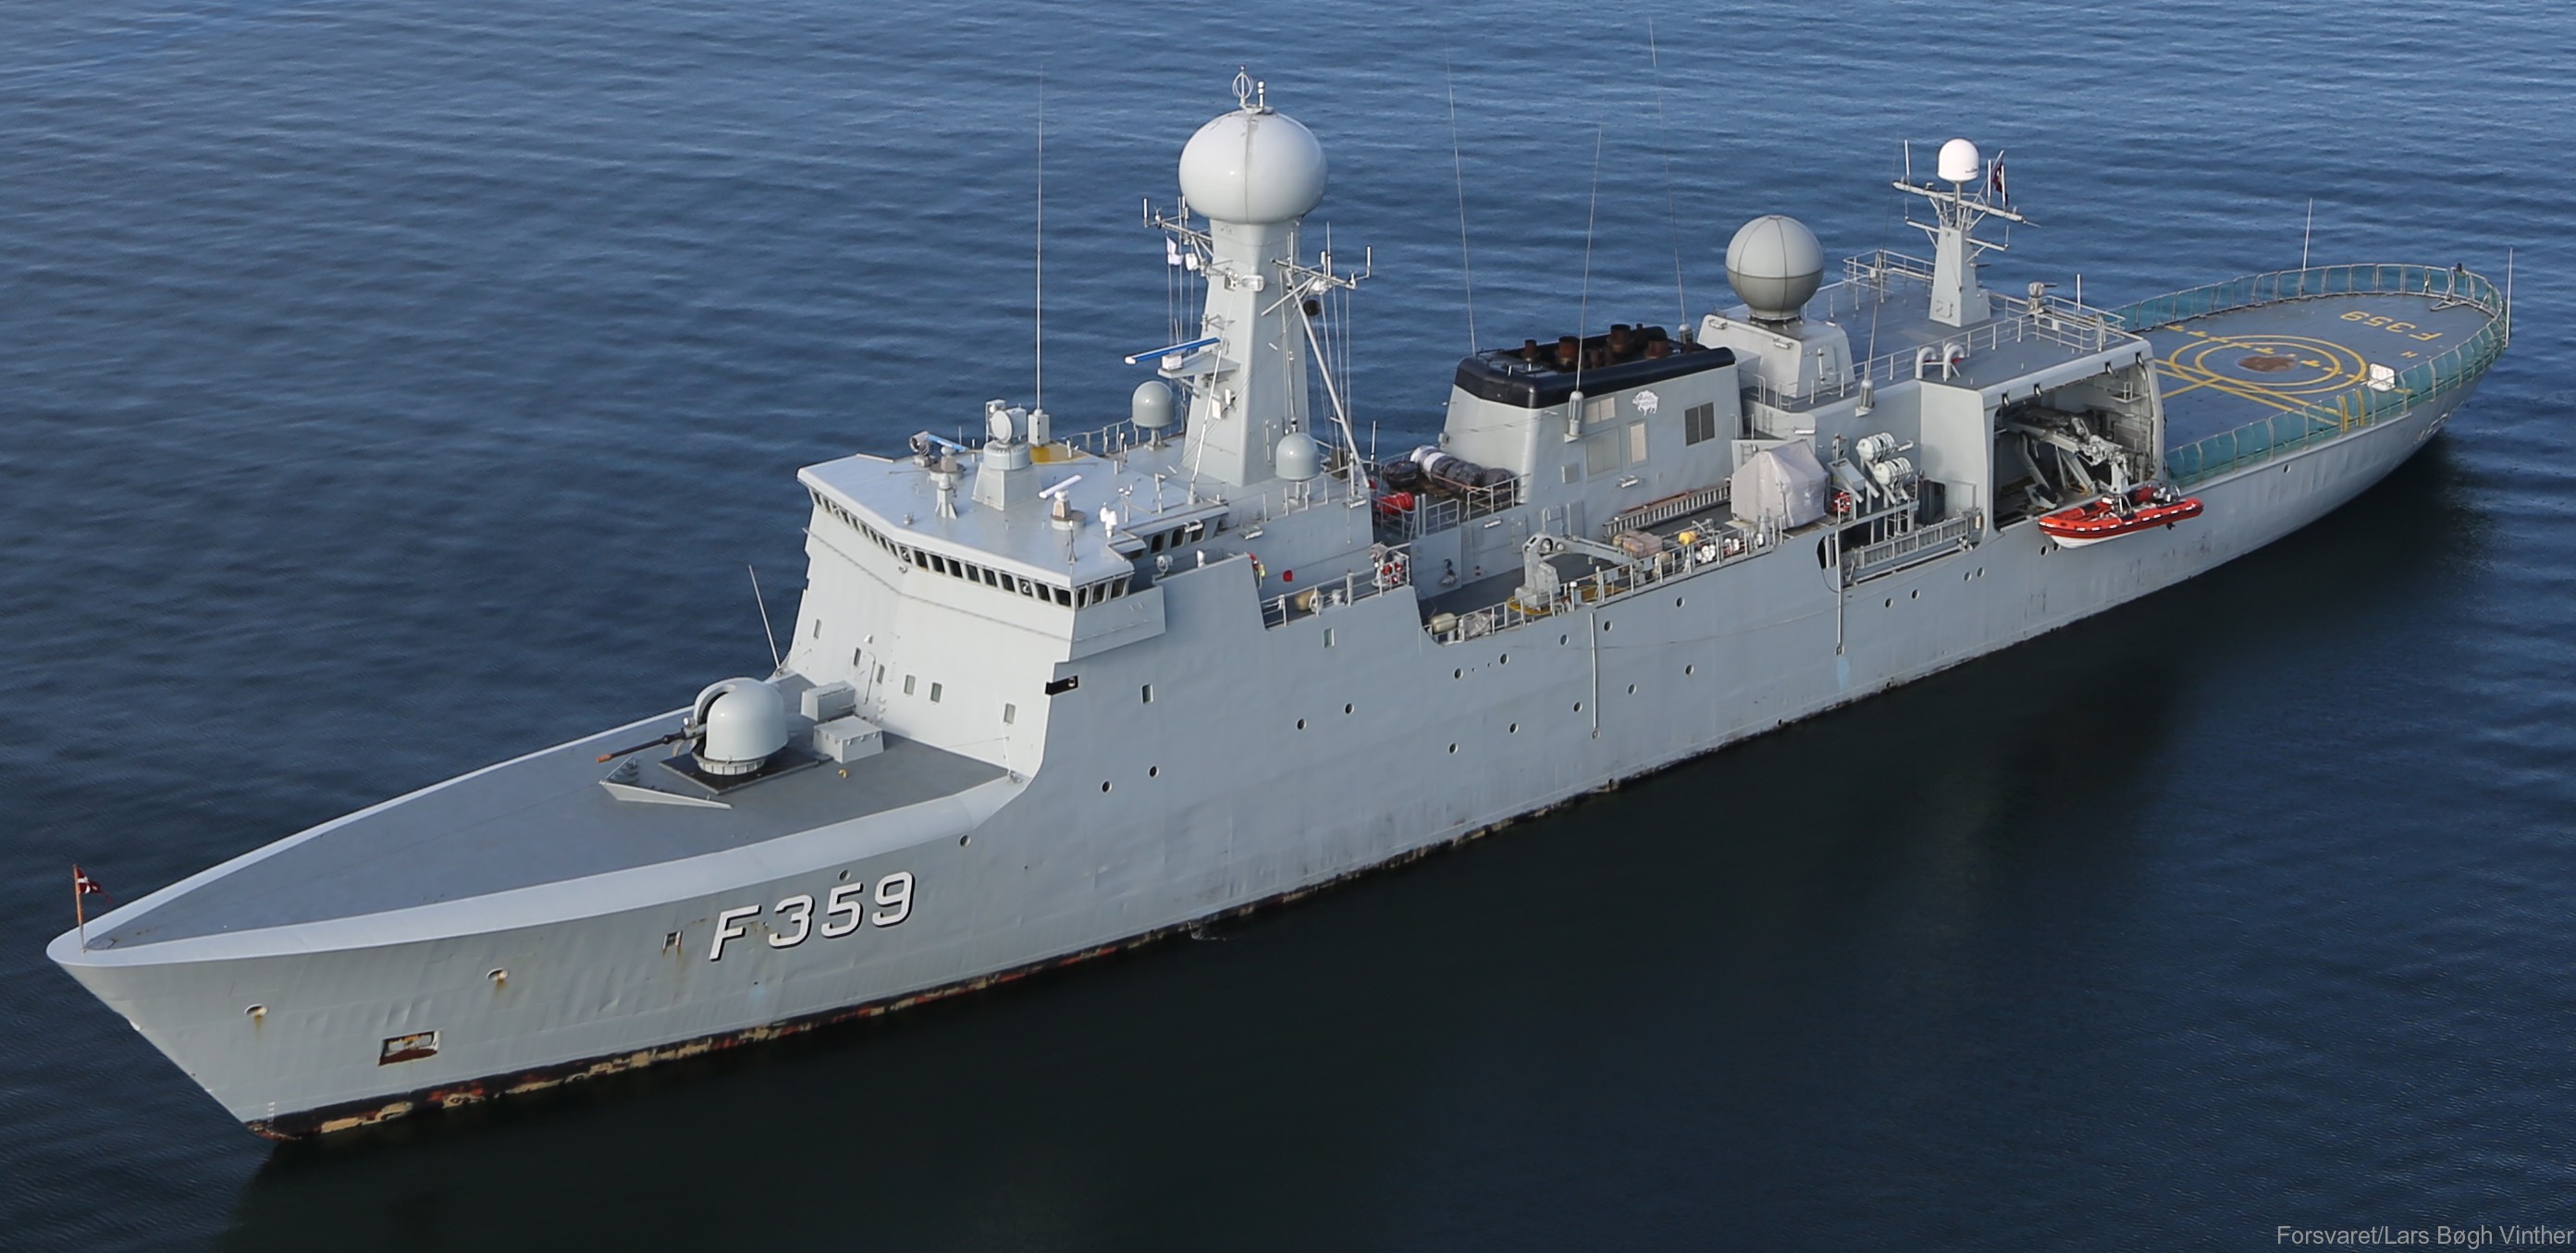 f-359 hdms vaedderen thetis class ocean patrol frigate royal danish navy kongelige danske marine kdm inspektionsskibet 02